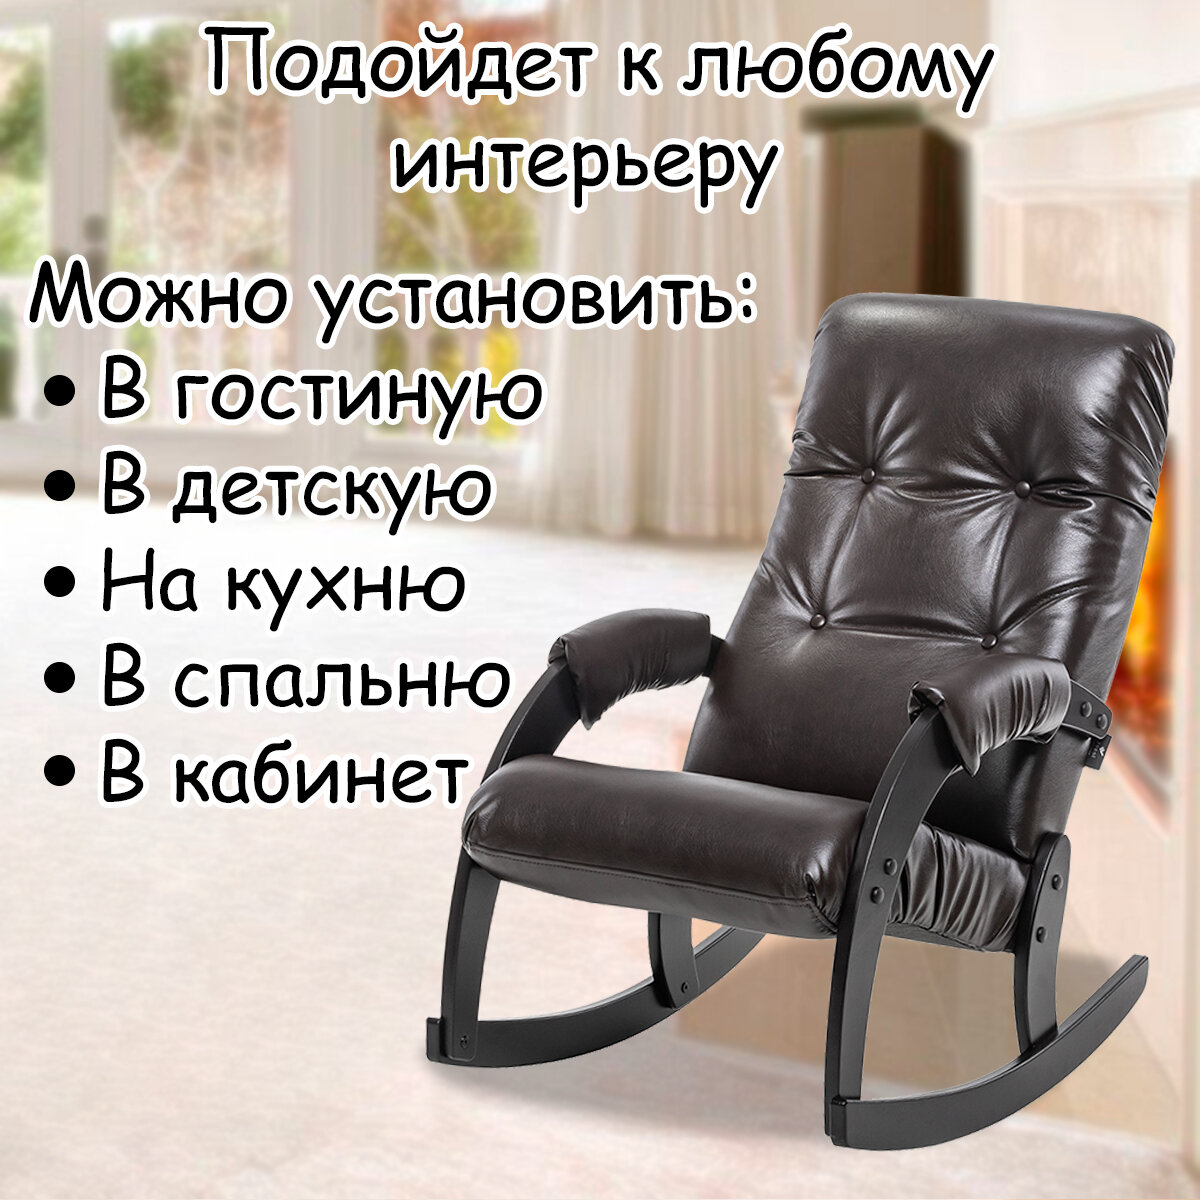 Кресло-качалка для взрослых 54х95х100 см, модель 67, экокожа, цвет: Oregon pearlamutr 120 (коричневый), каркас: Venge (черный) - фотография № 10